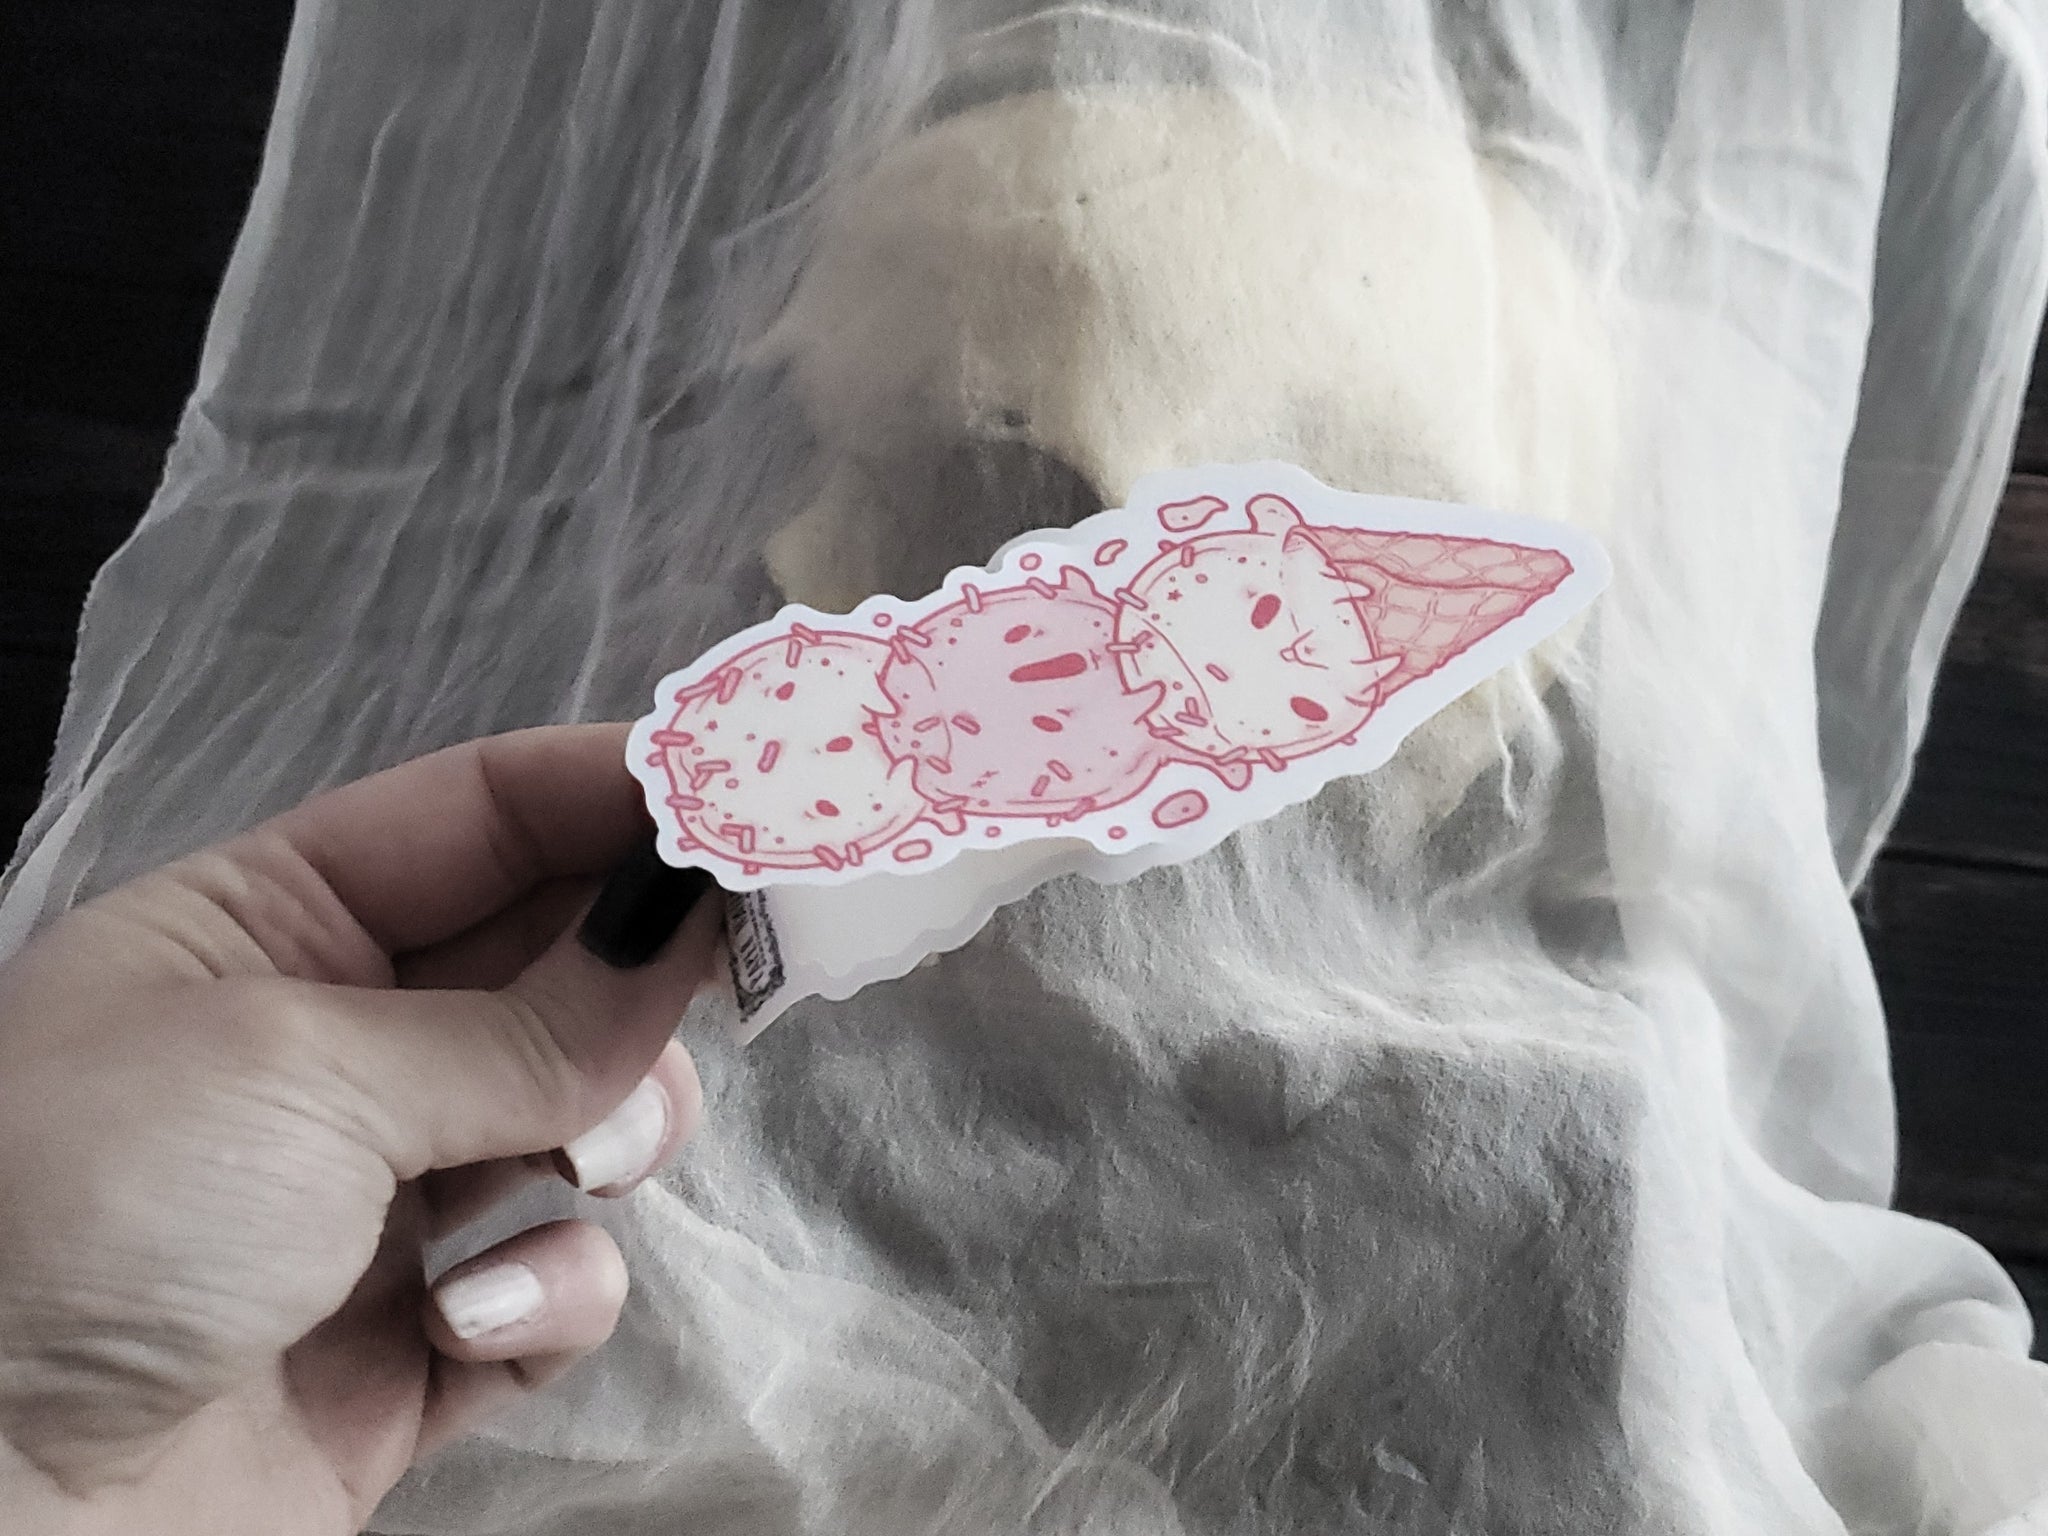 Ice Cream Ghost Cone Sticker